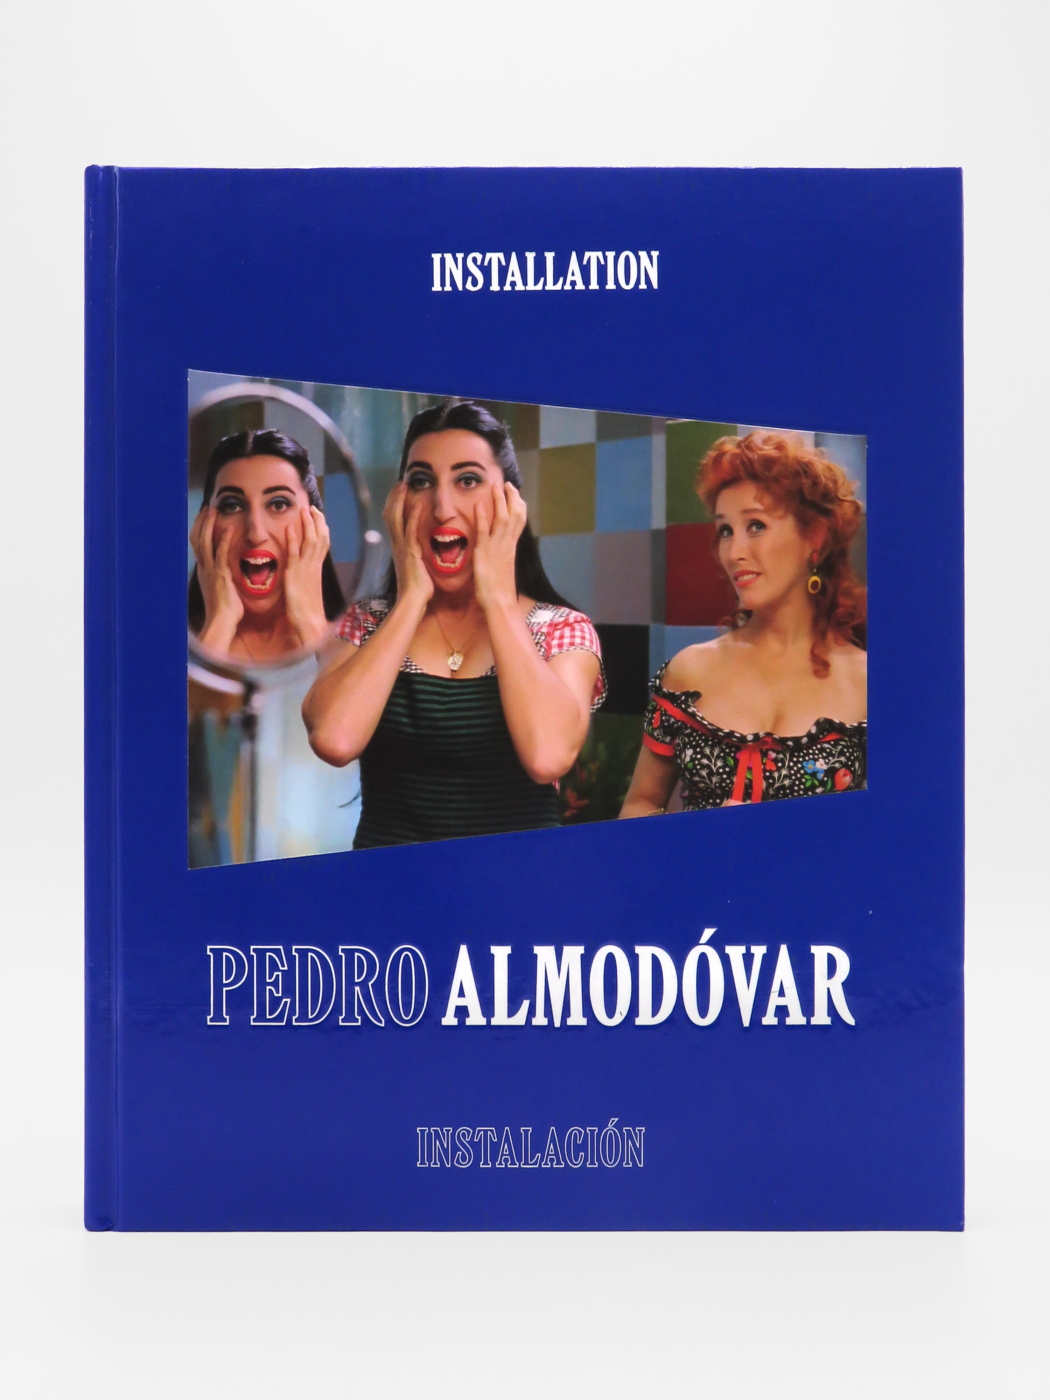 Pedro Almodóvar, Installation/Instalación